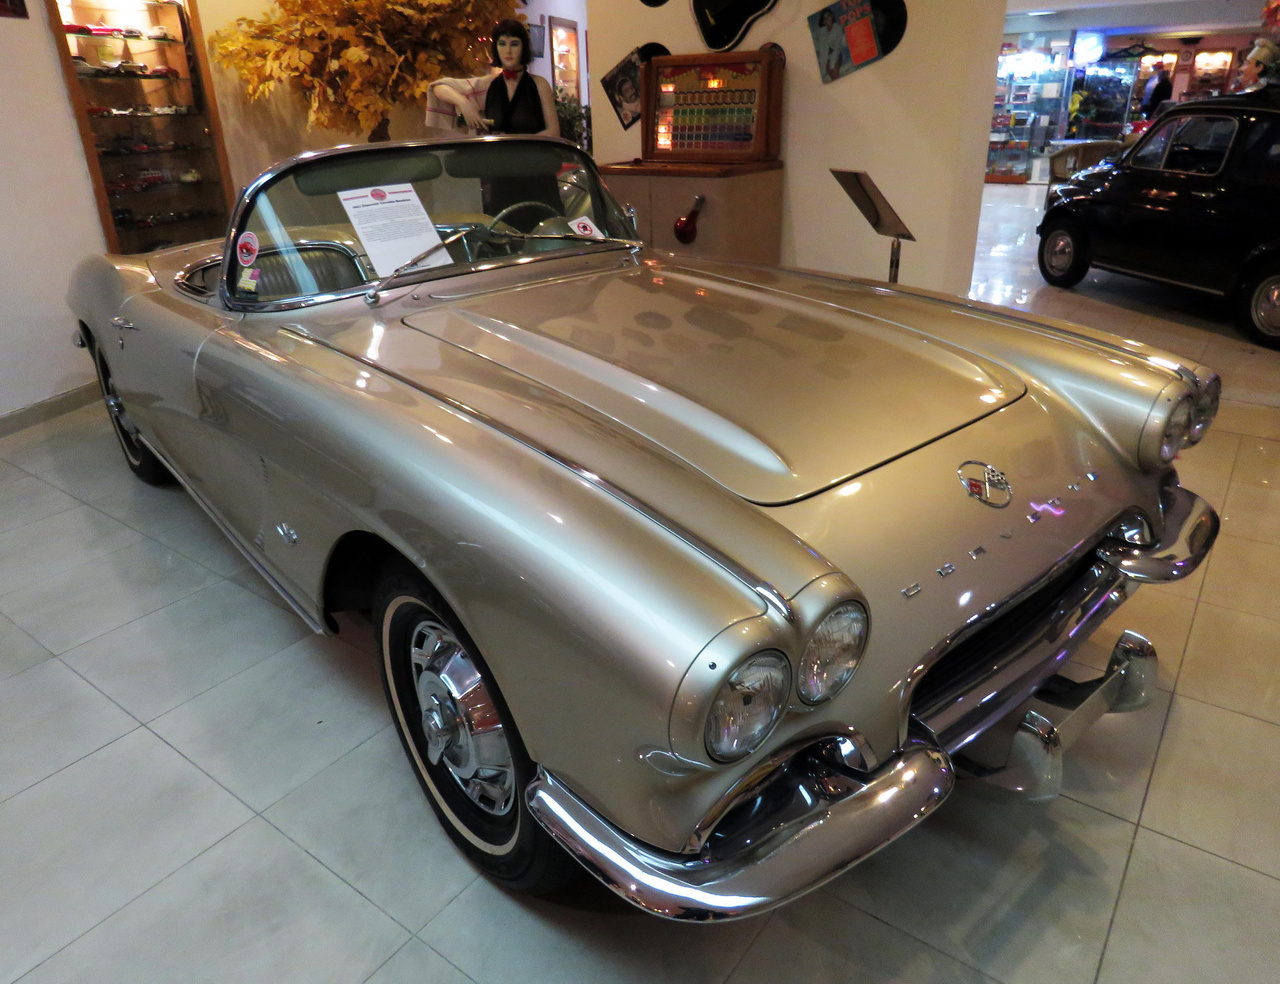 Korának egyik elismert és sokak által vágyott, mára ikonikussá nemesedett sportkocsija volt ez az 1962-es modellévű Chevrolet Corvette. Az 5362 köbcentis, 250 lóerős V8-as karburátoros motorral szerelt kétüléses roadster végsebessége megközelítette a 200 km/órát.